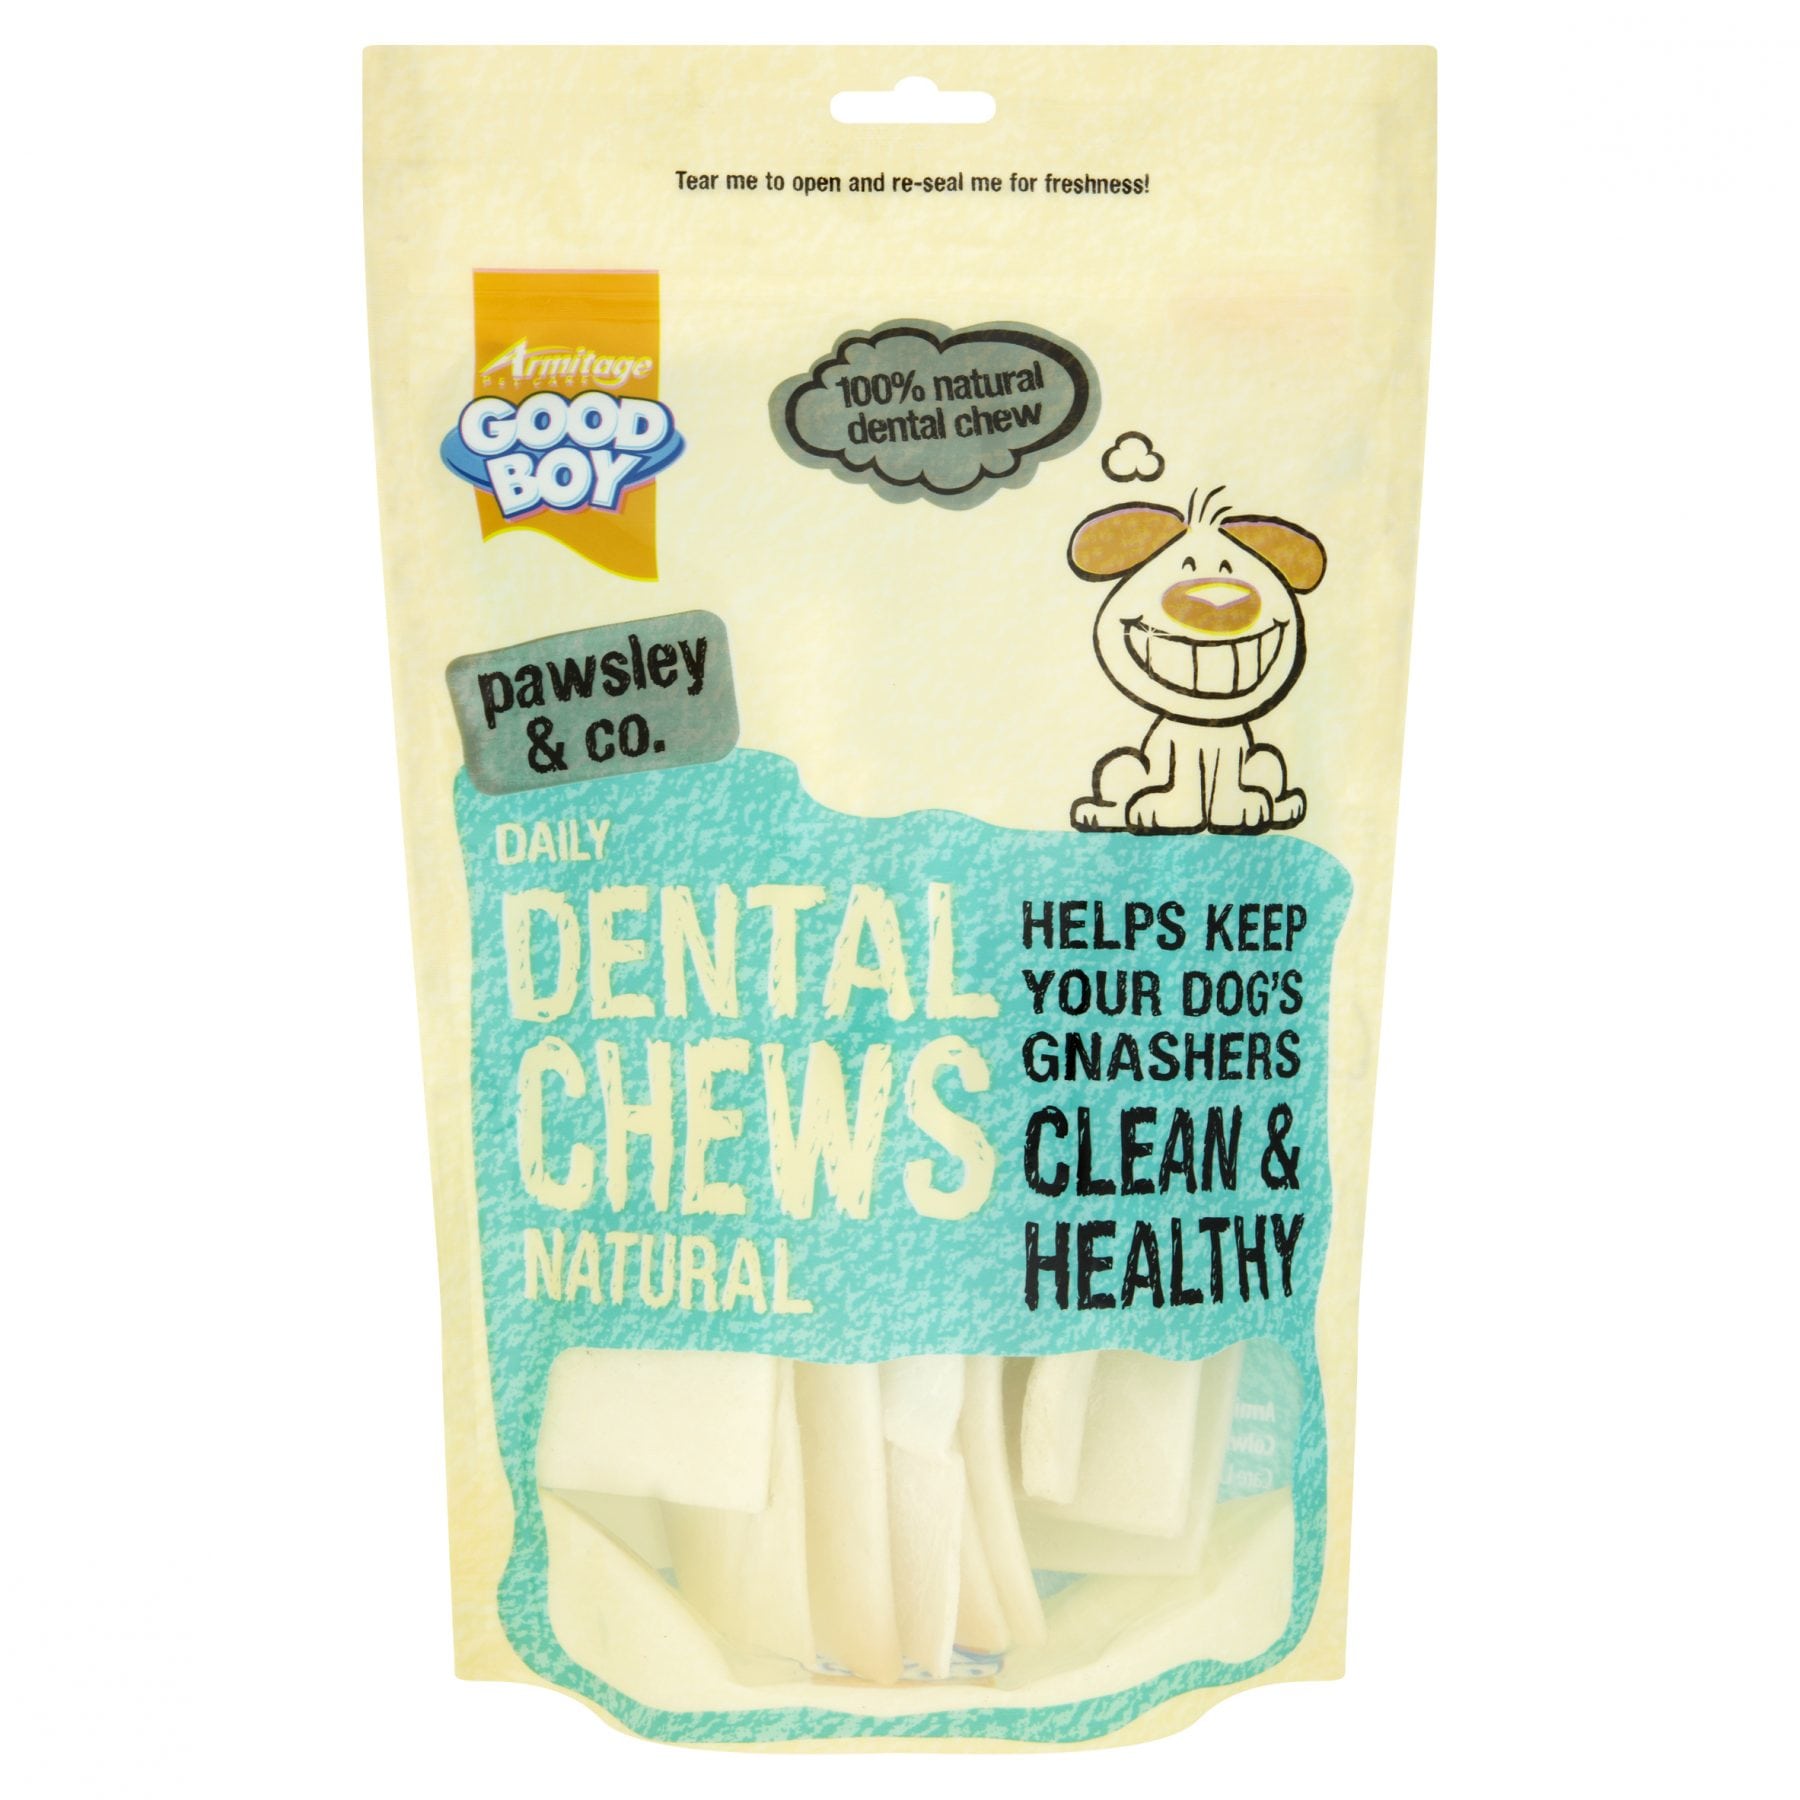 Co Daily Dental Chews Dog Treats 